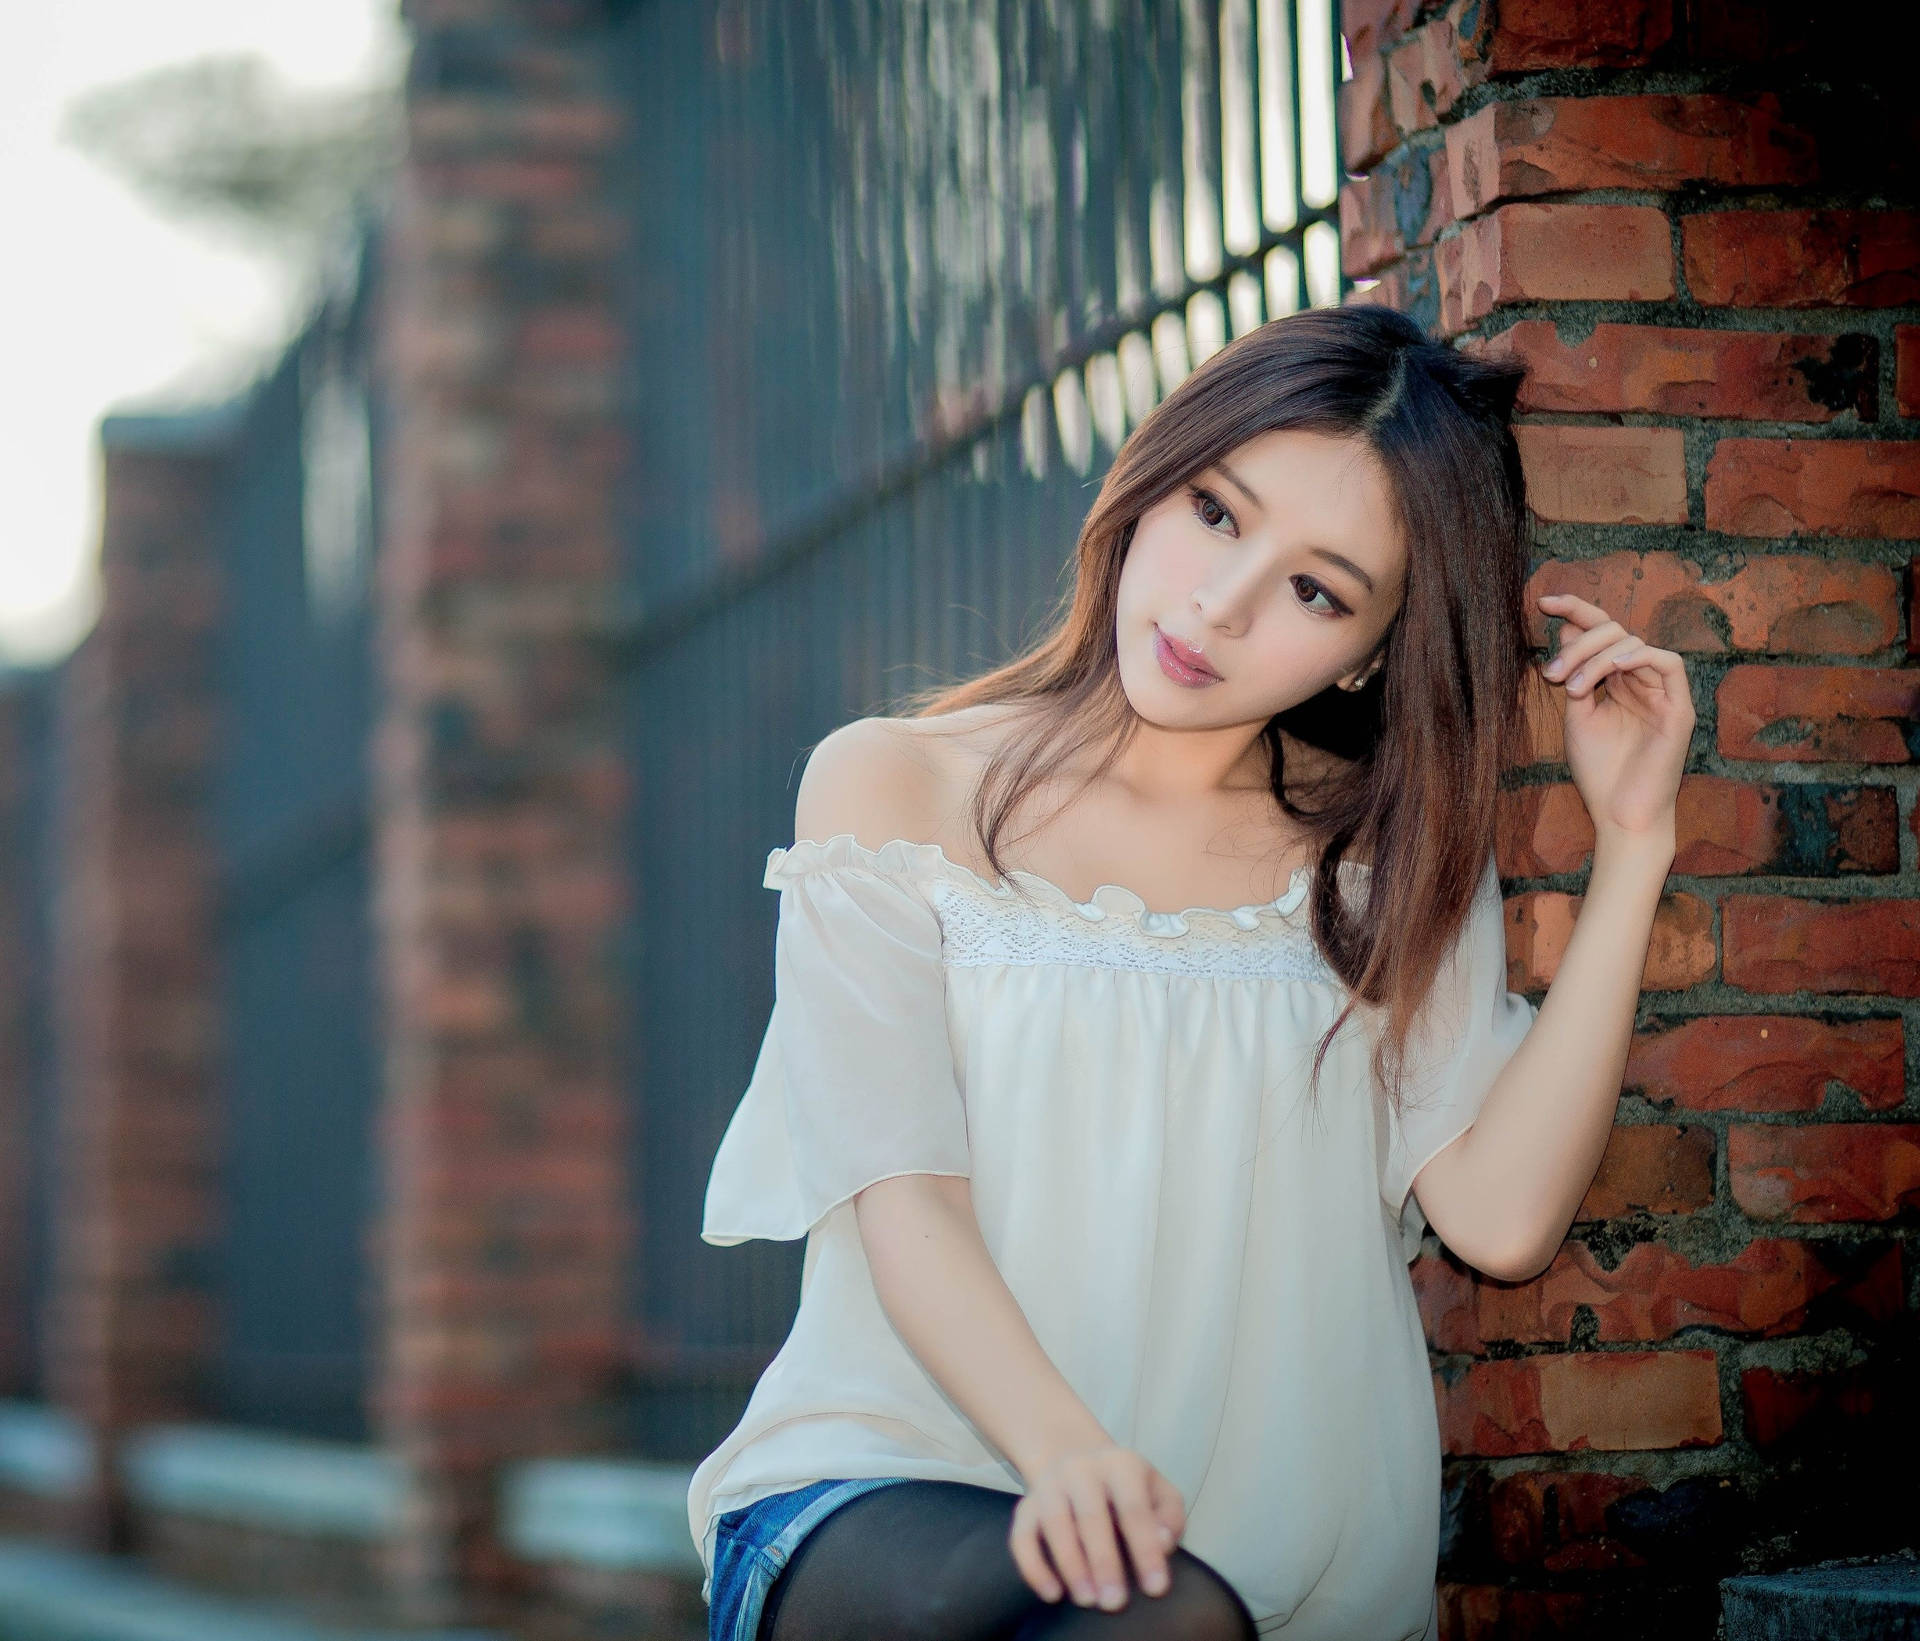 Chinese Girl White Tube Blouse Wallpaper